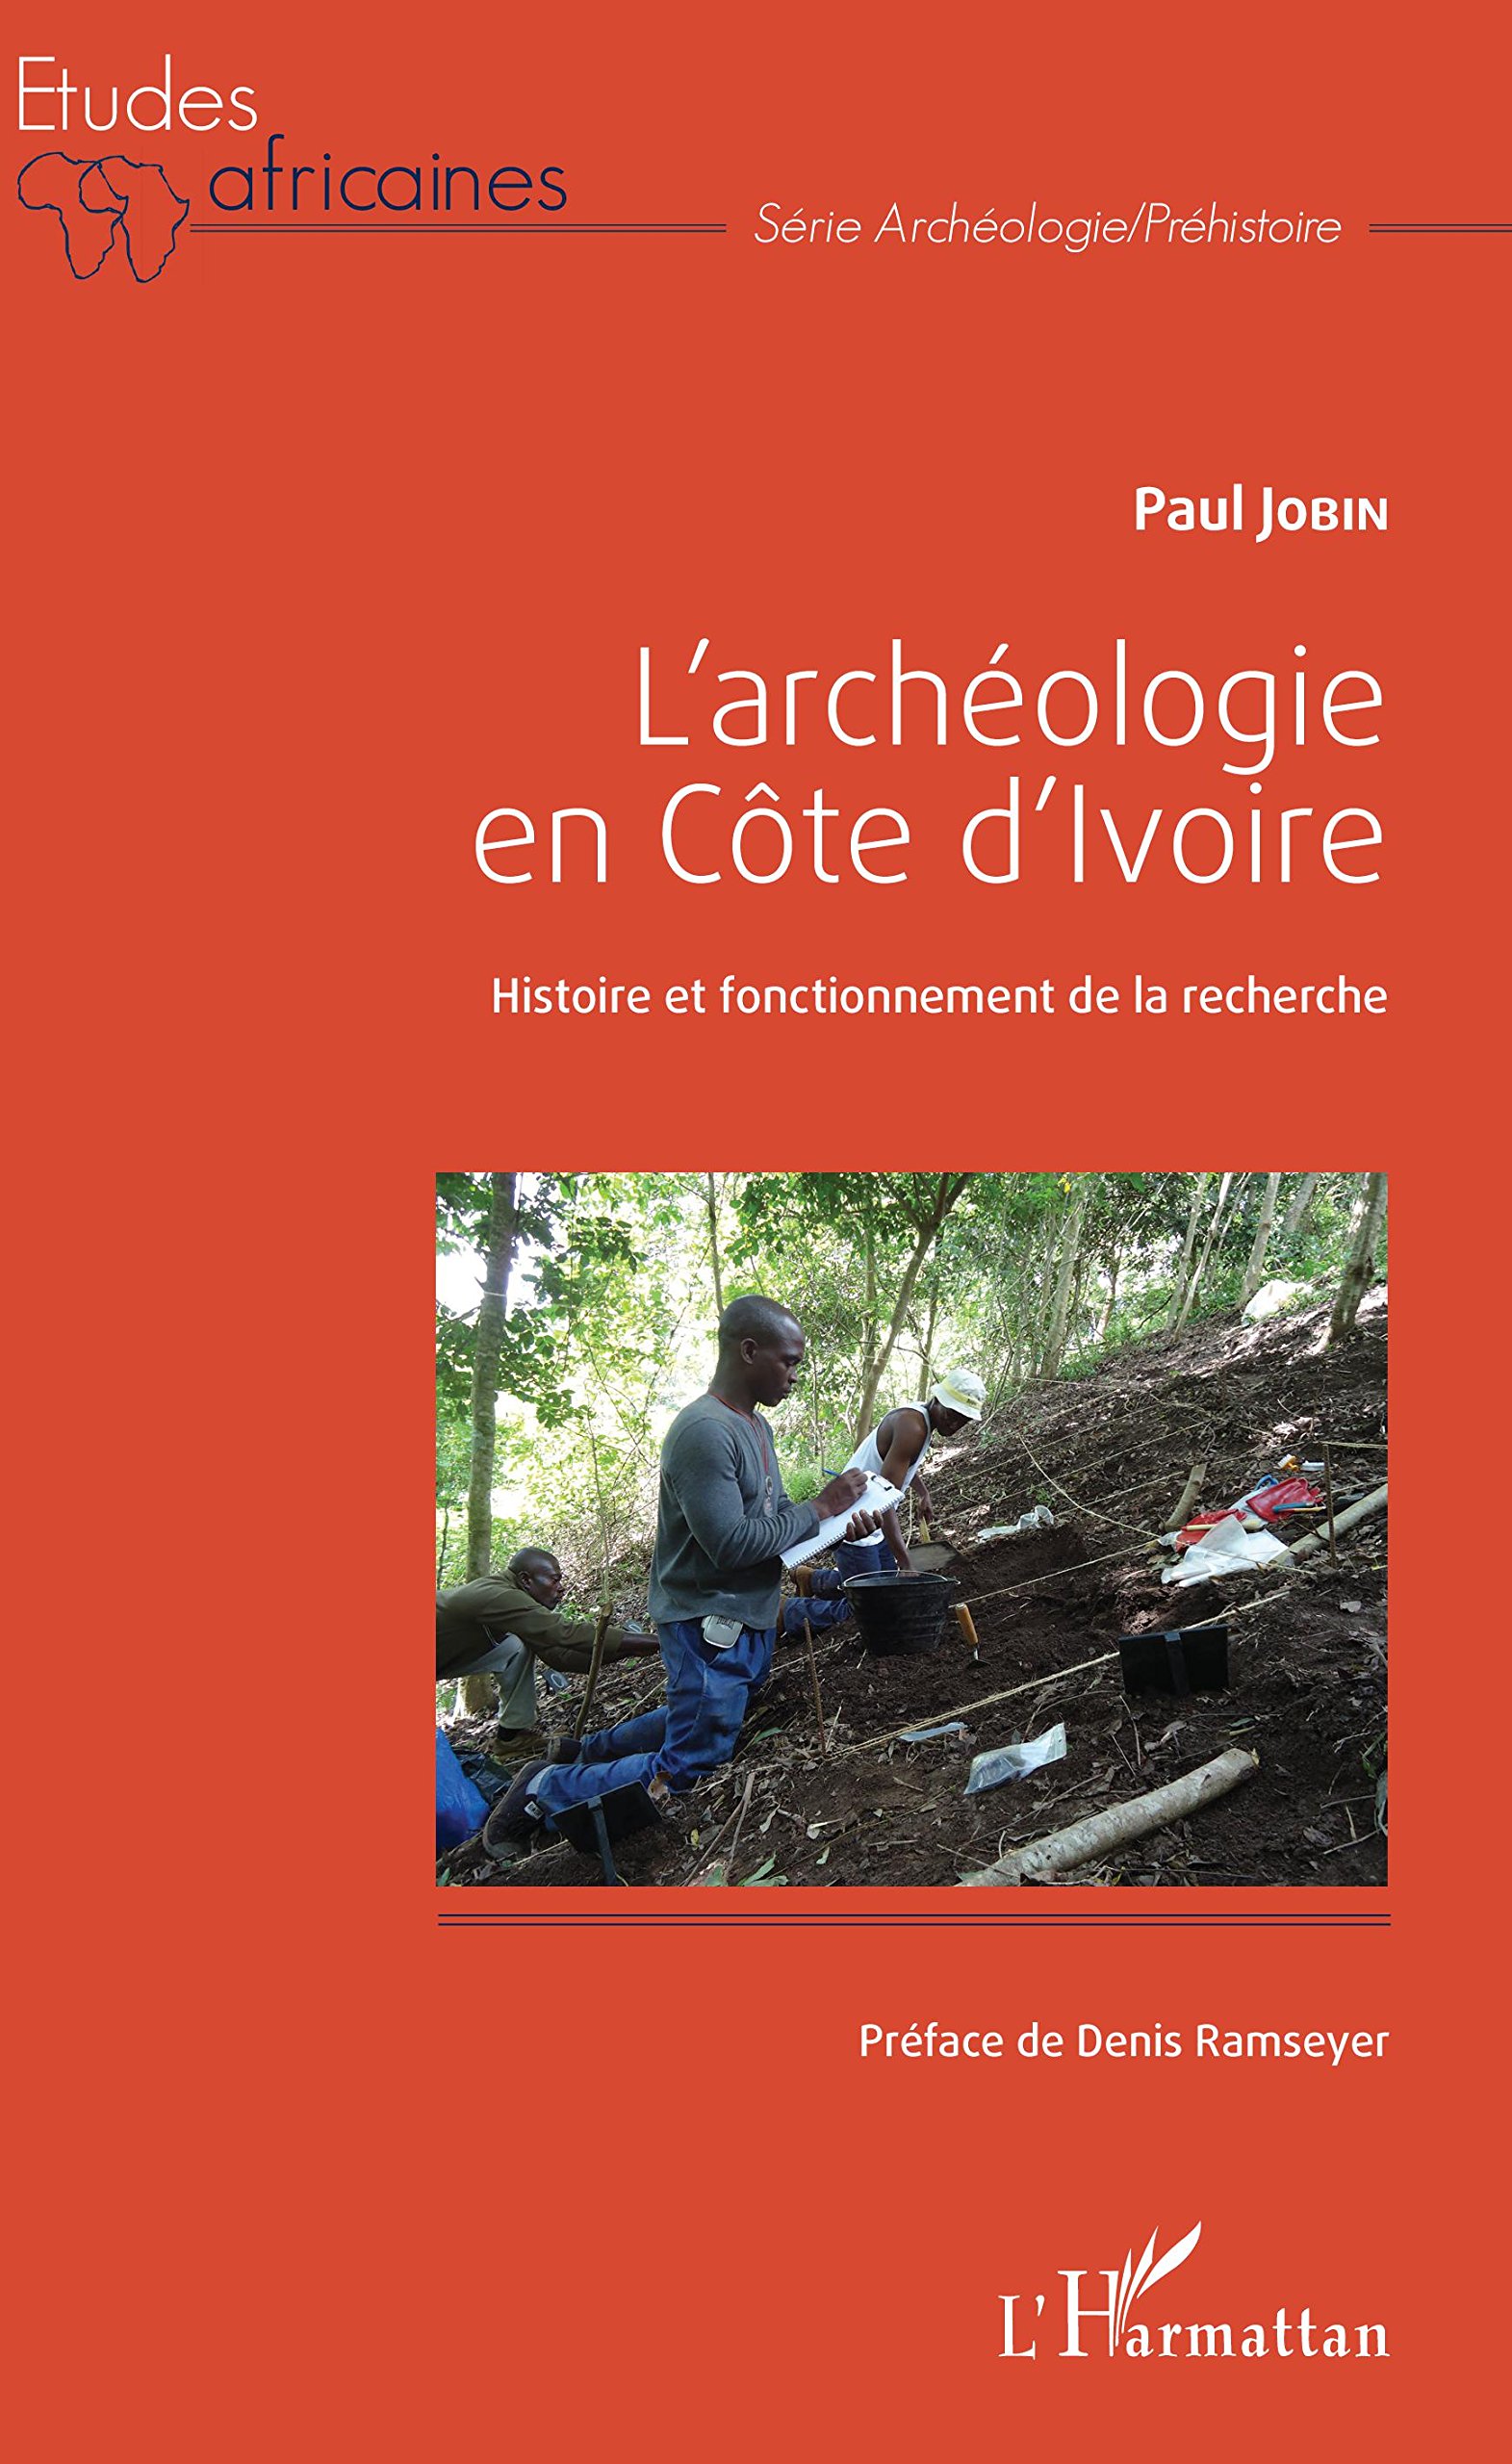 L'archéologie en Côte d'Ivoire. Histoire et fonctionnement de la recherche, 2018, 322 p.